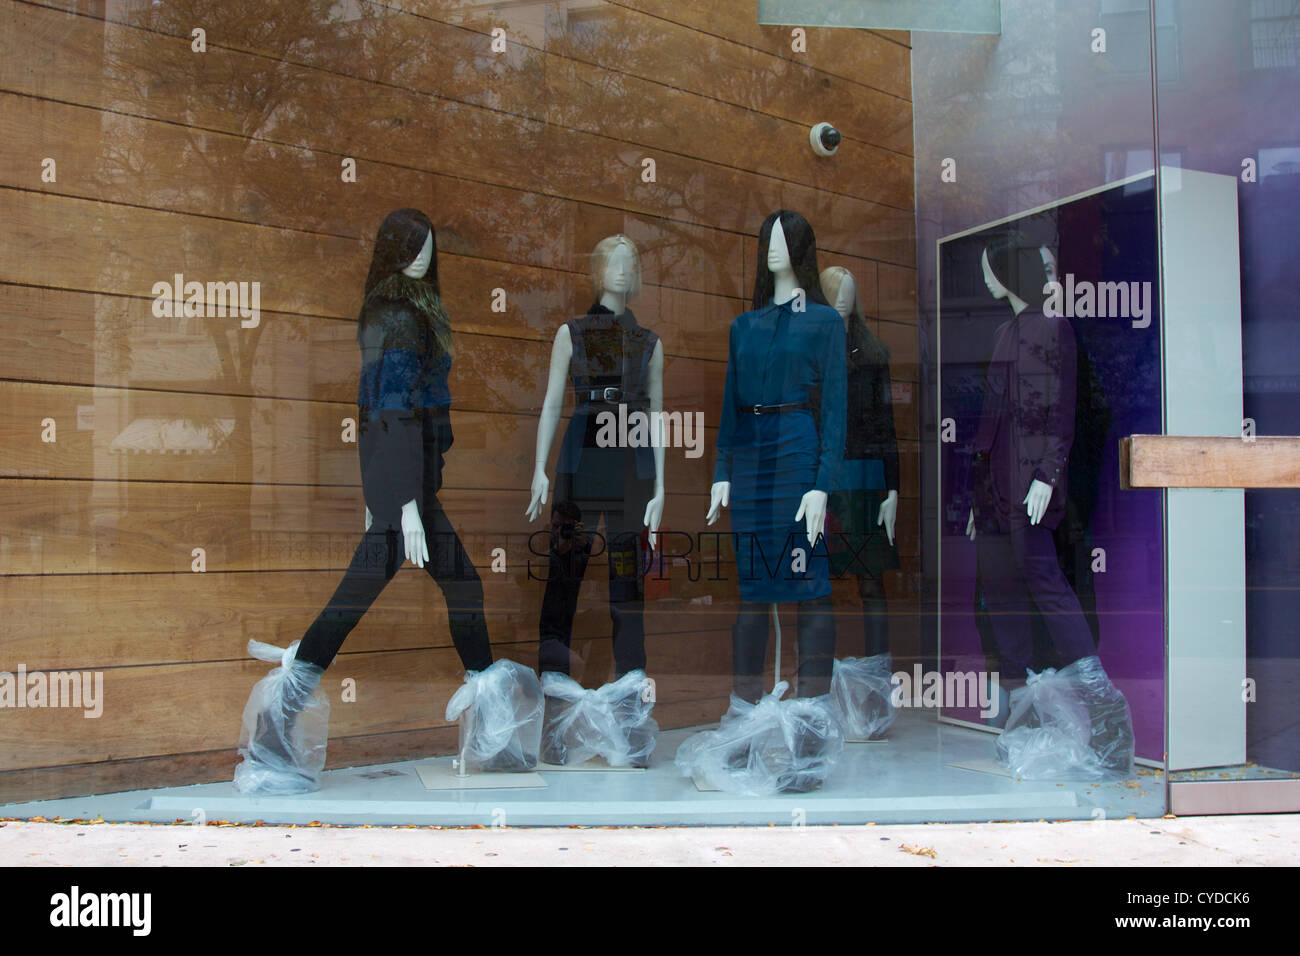 NEW YORK, NY, Stati Uniti d'America - 31 ottobre 2012: fashion store nel quartiere di Soho, Lower Manhattan ha preparato in maniera peculiare per l'uragano Sandy in New York, NY, STATI UNITI D'AMERICA, il 31 ottobre 2012. Foto Stock